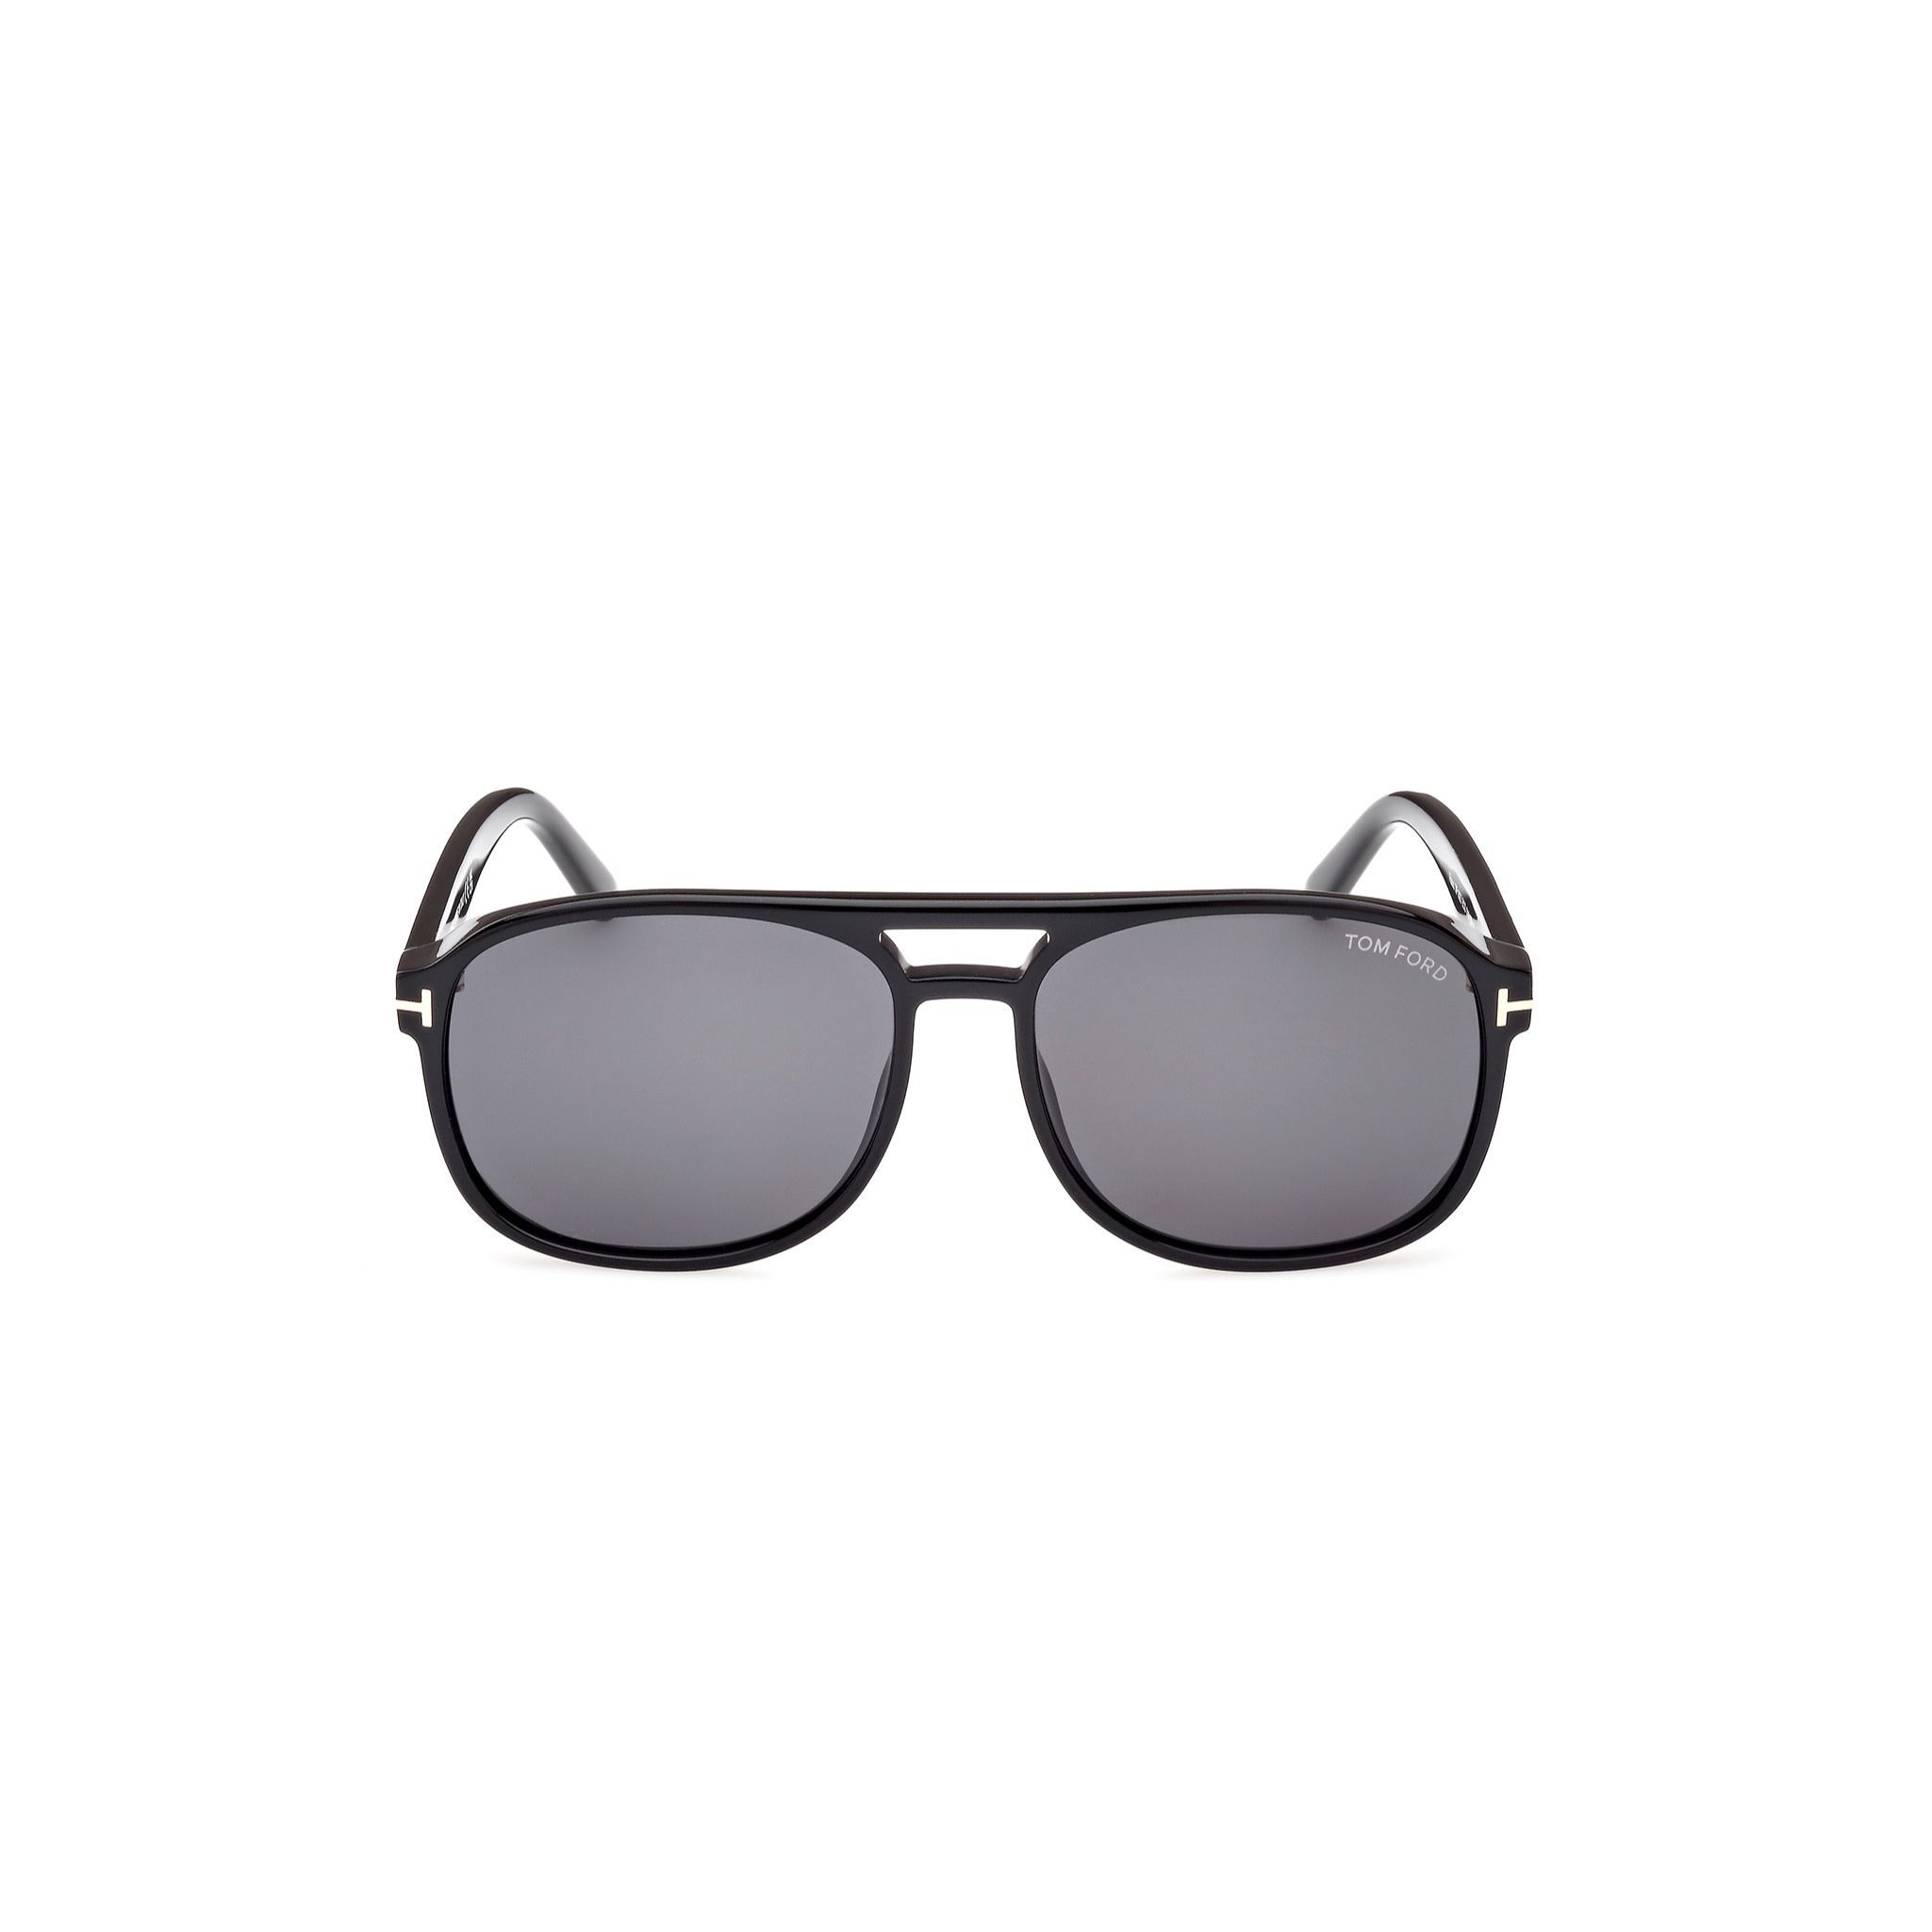 FT1022 Pilot Sunglasses 01A - size 58